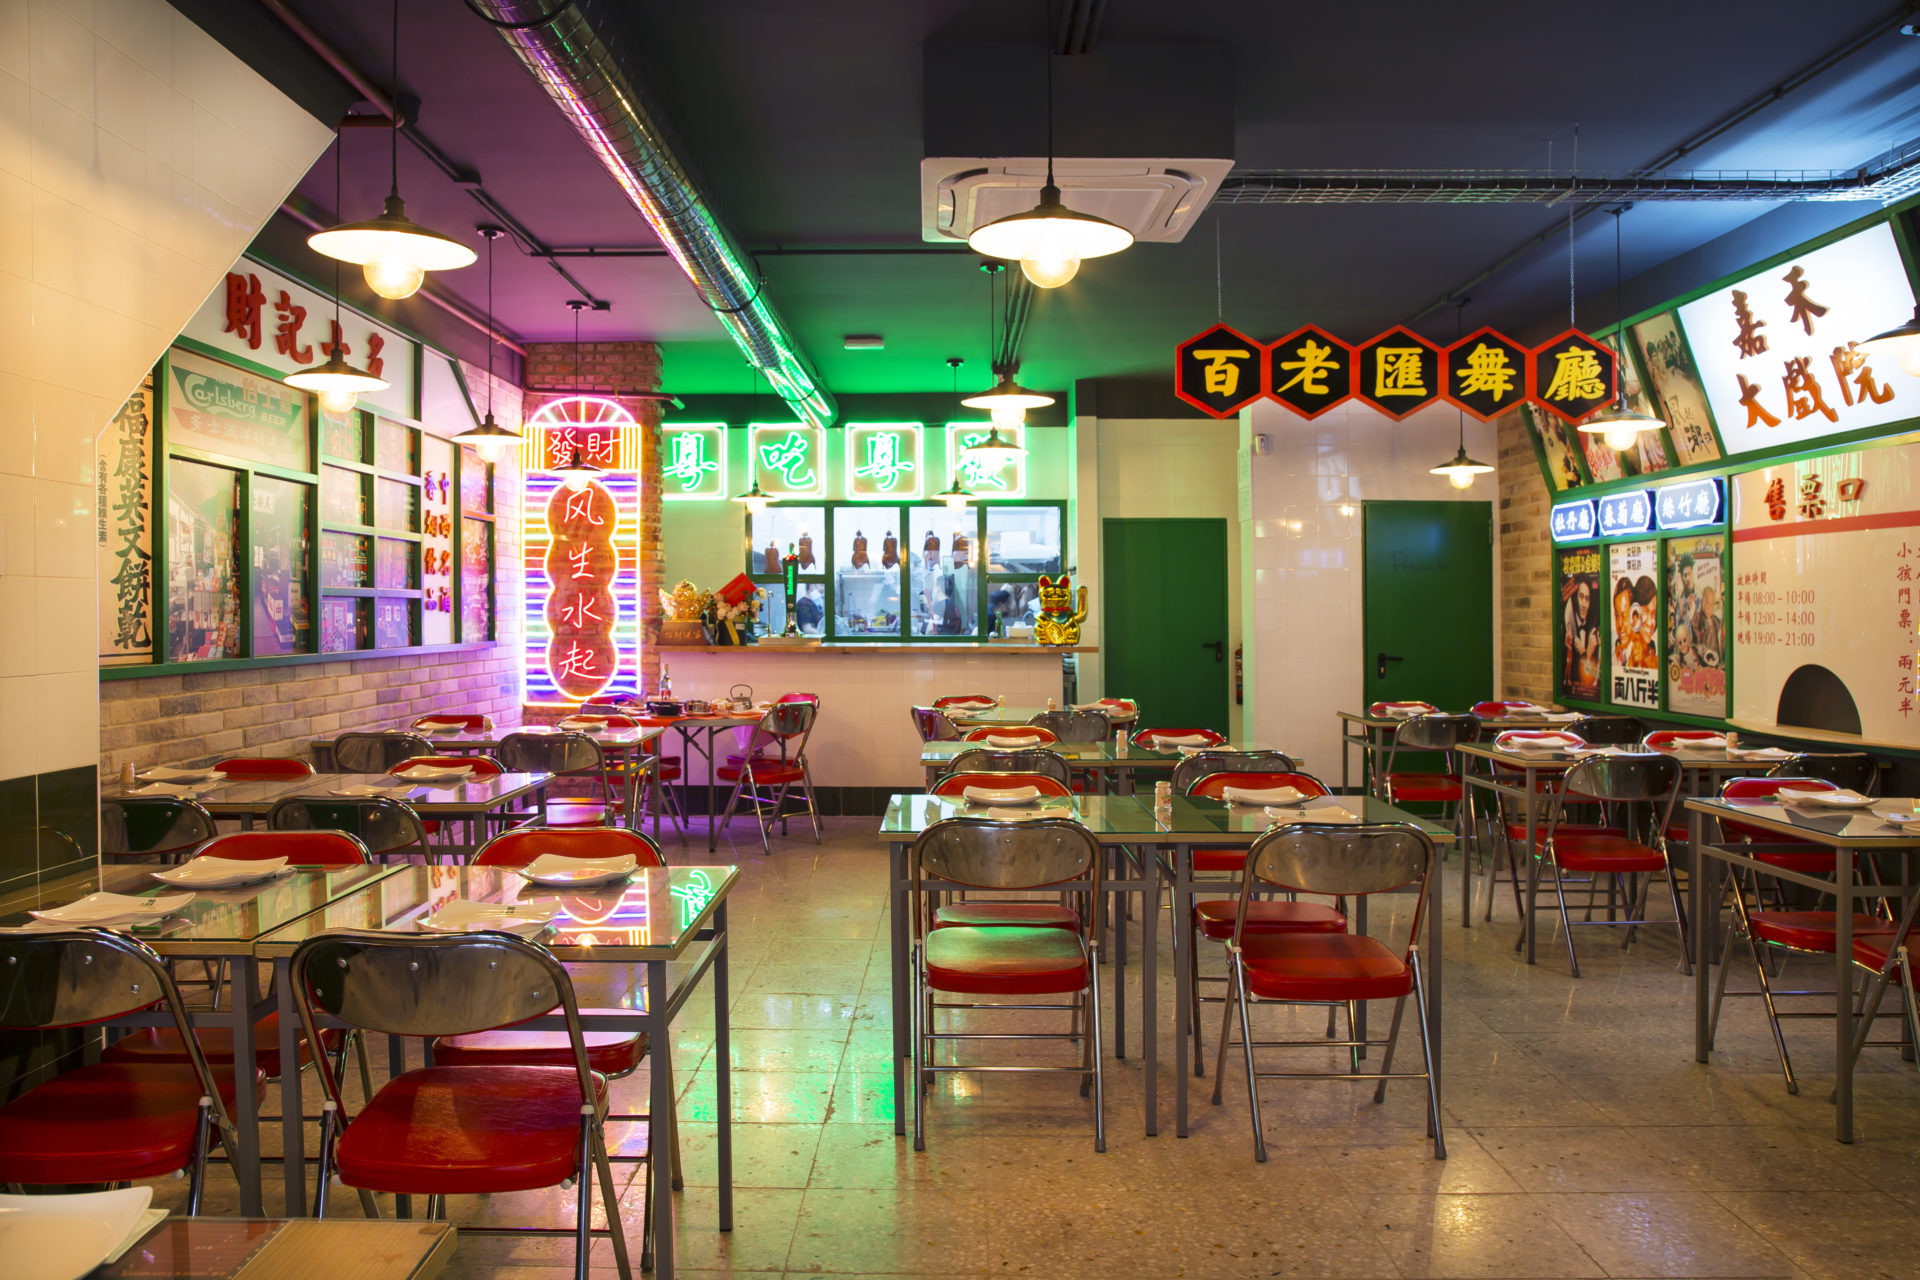 El restaurante Hong Kong 70 in Chinatown, el cuarto de la compañía, supone el nacimiento del Grupo Bellaciao.